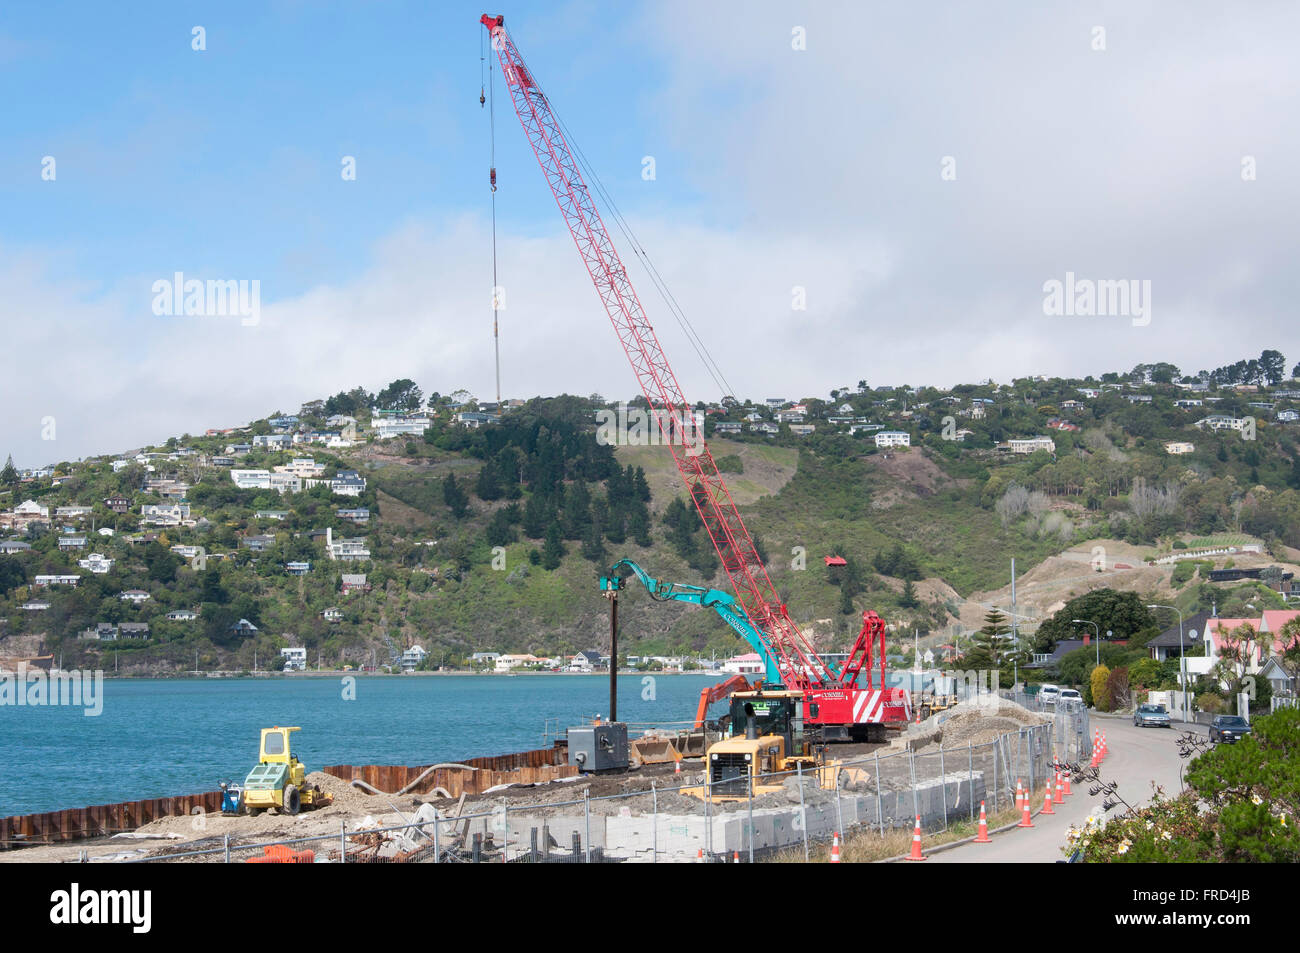 Wiederaufbau der Ufermauer, Beachville Road, Redcliffs, Christchurch, Region Canterbury, Südinsel, Neuseeland Stockfoto